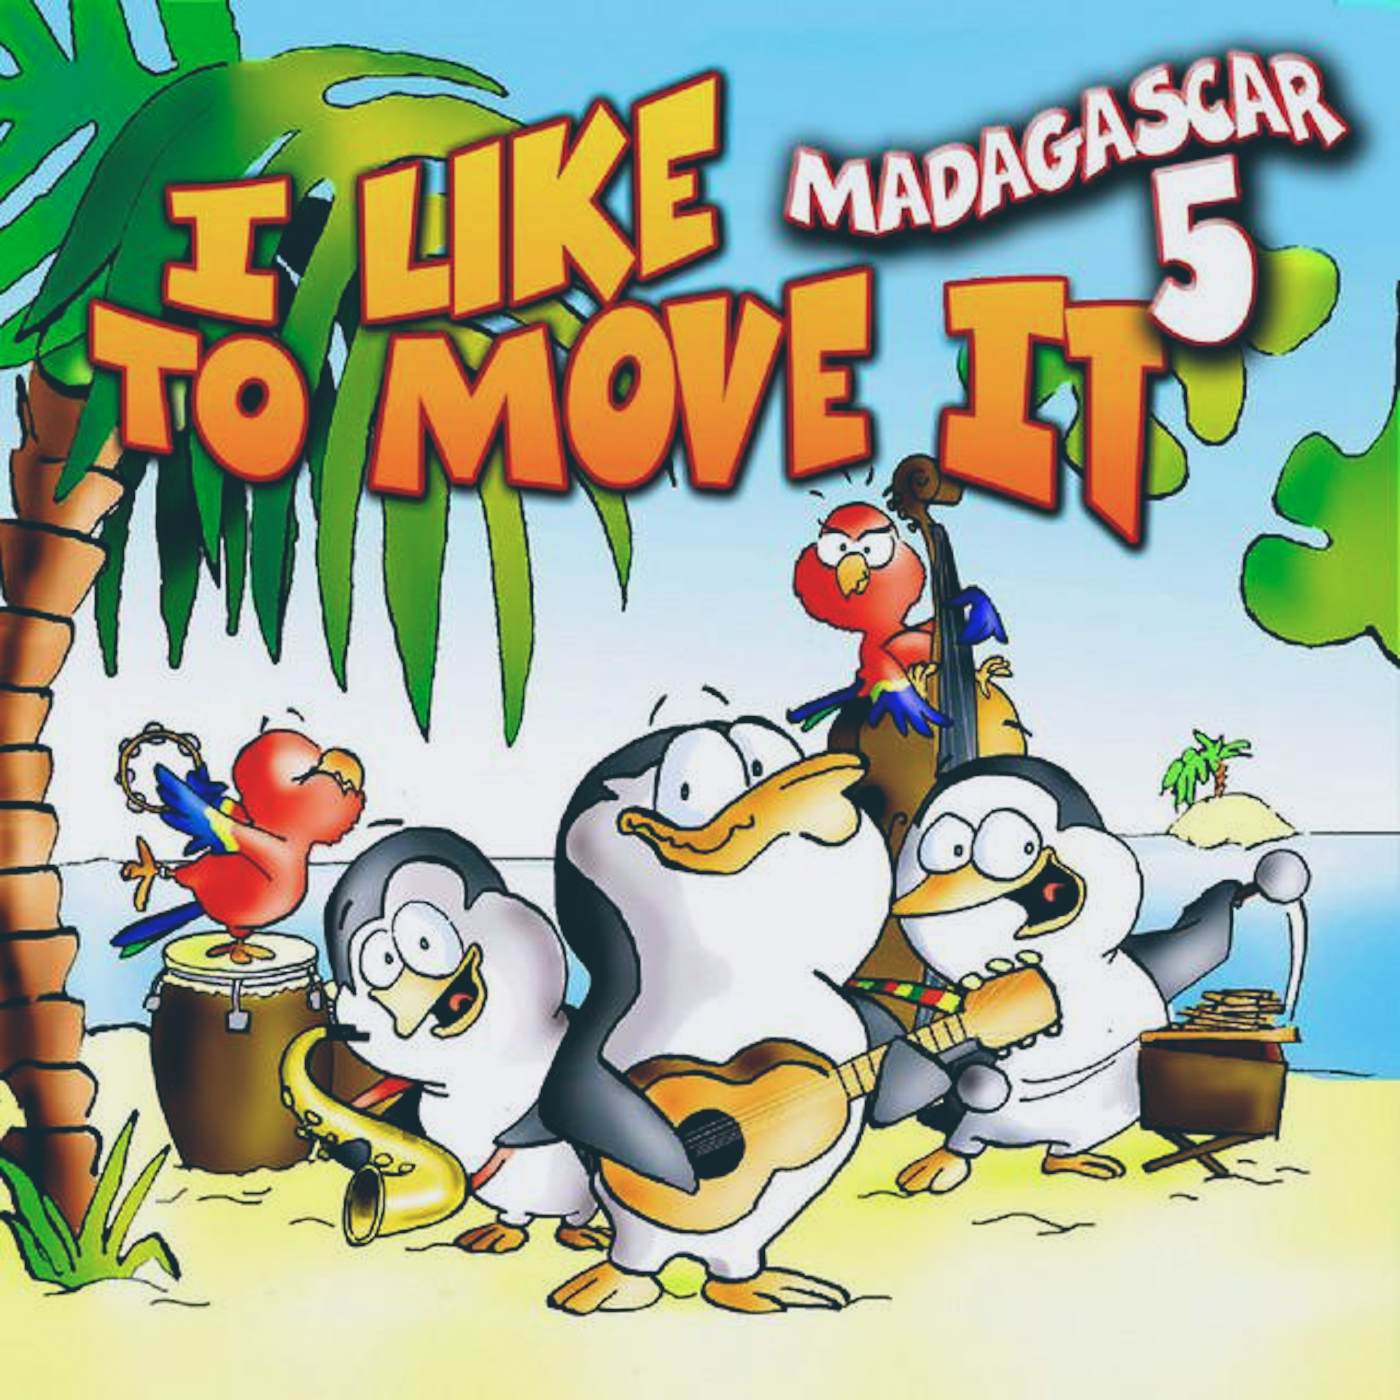 Включи i like to move it мадагаскар. I like to move Мадагаскар. Madagascar 5. I like to move it. Madagascar 5 i like to move it.